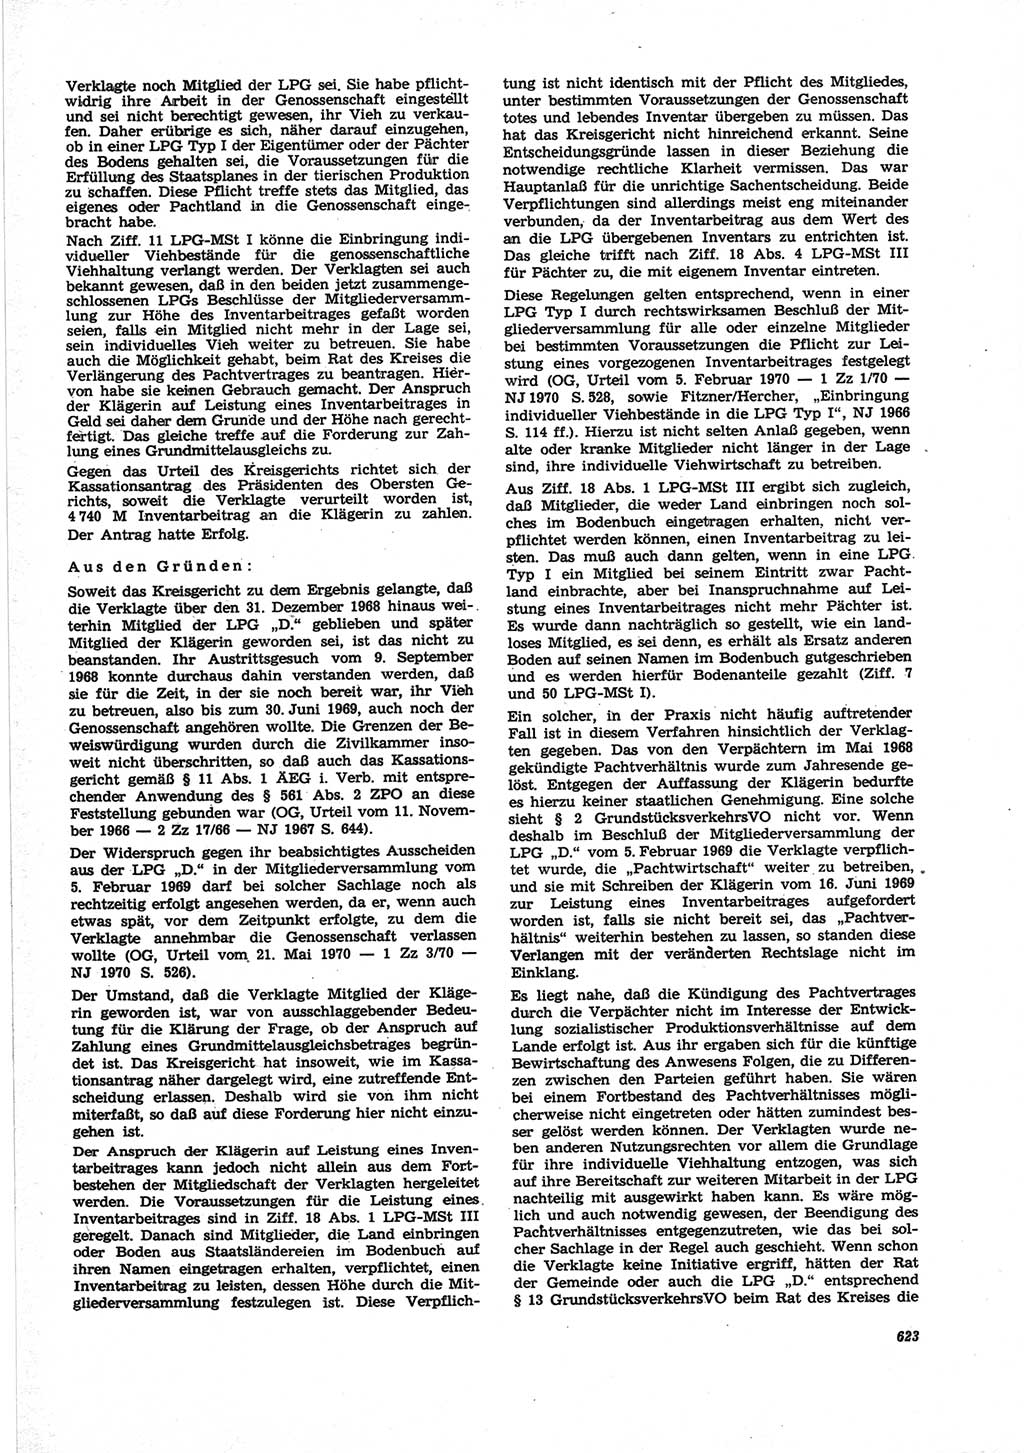 Neue Justiz (NJ), Zeitschrift für Recht und Rechtswissenschaft [Deutsche Demokratische Republik (DDR)], 25. Jahrgang 1971, Seite 623 (NJ DDR 1971, S. 623)